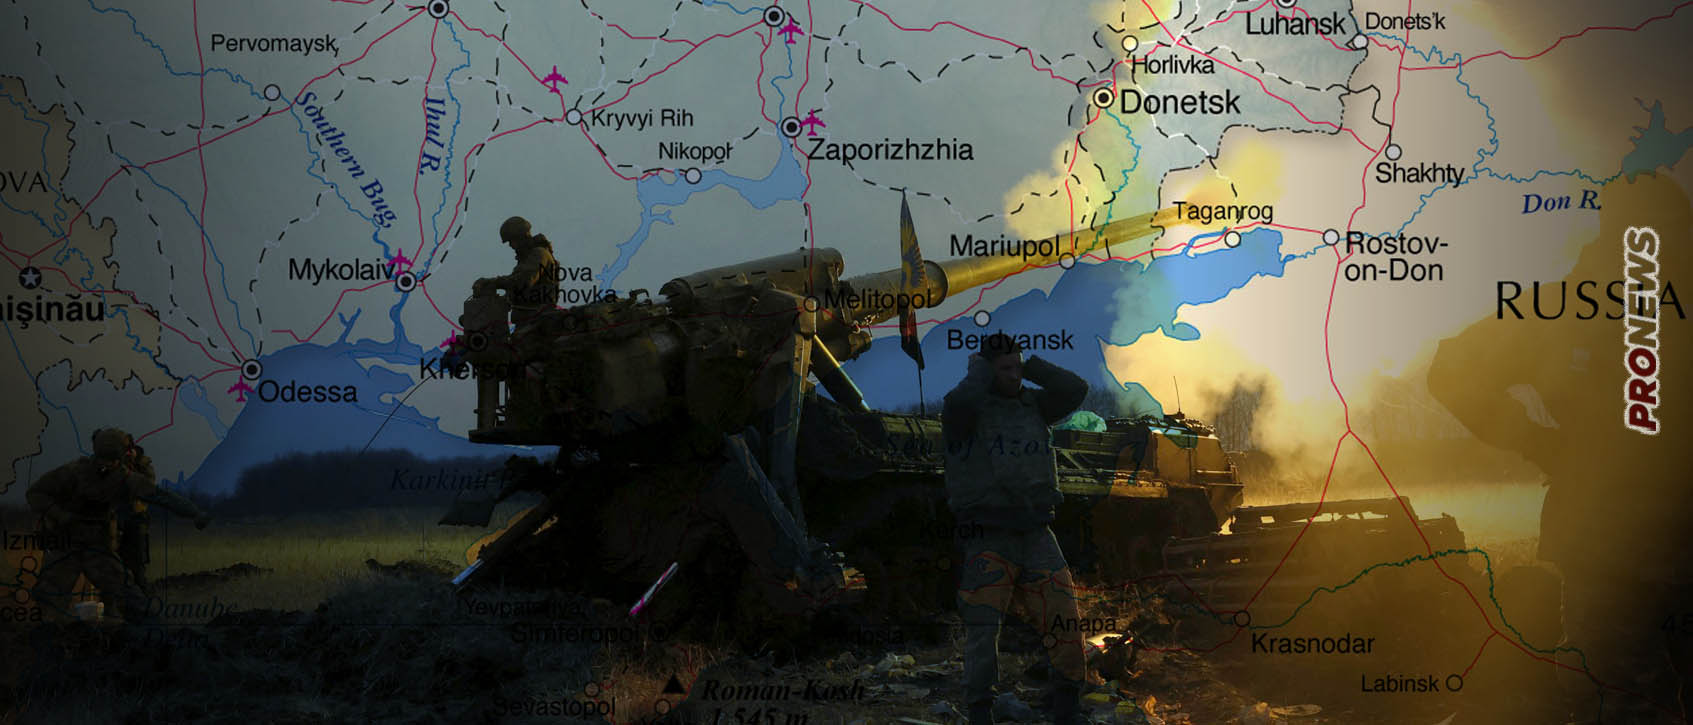 Ήττα των Ουκρανών στο Νοβοντονέτσκ: Έχασαν 50 τεθωρακισμένα – Ρωσική «παγίδα» και στο Ρομπότνι – Από 120 Ουκρανούς σώθηκαν 3